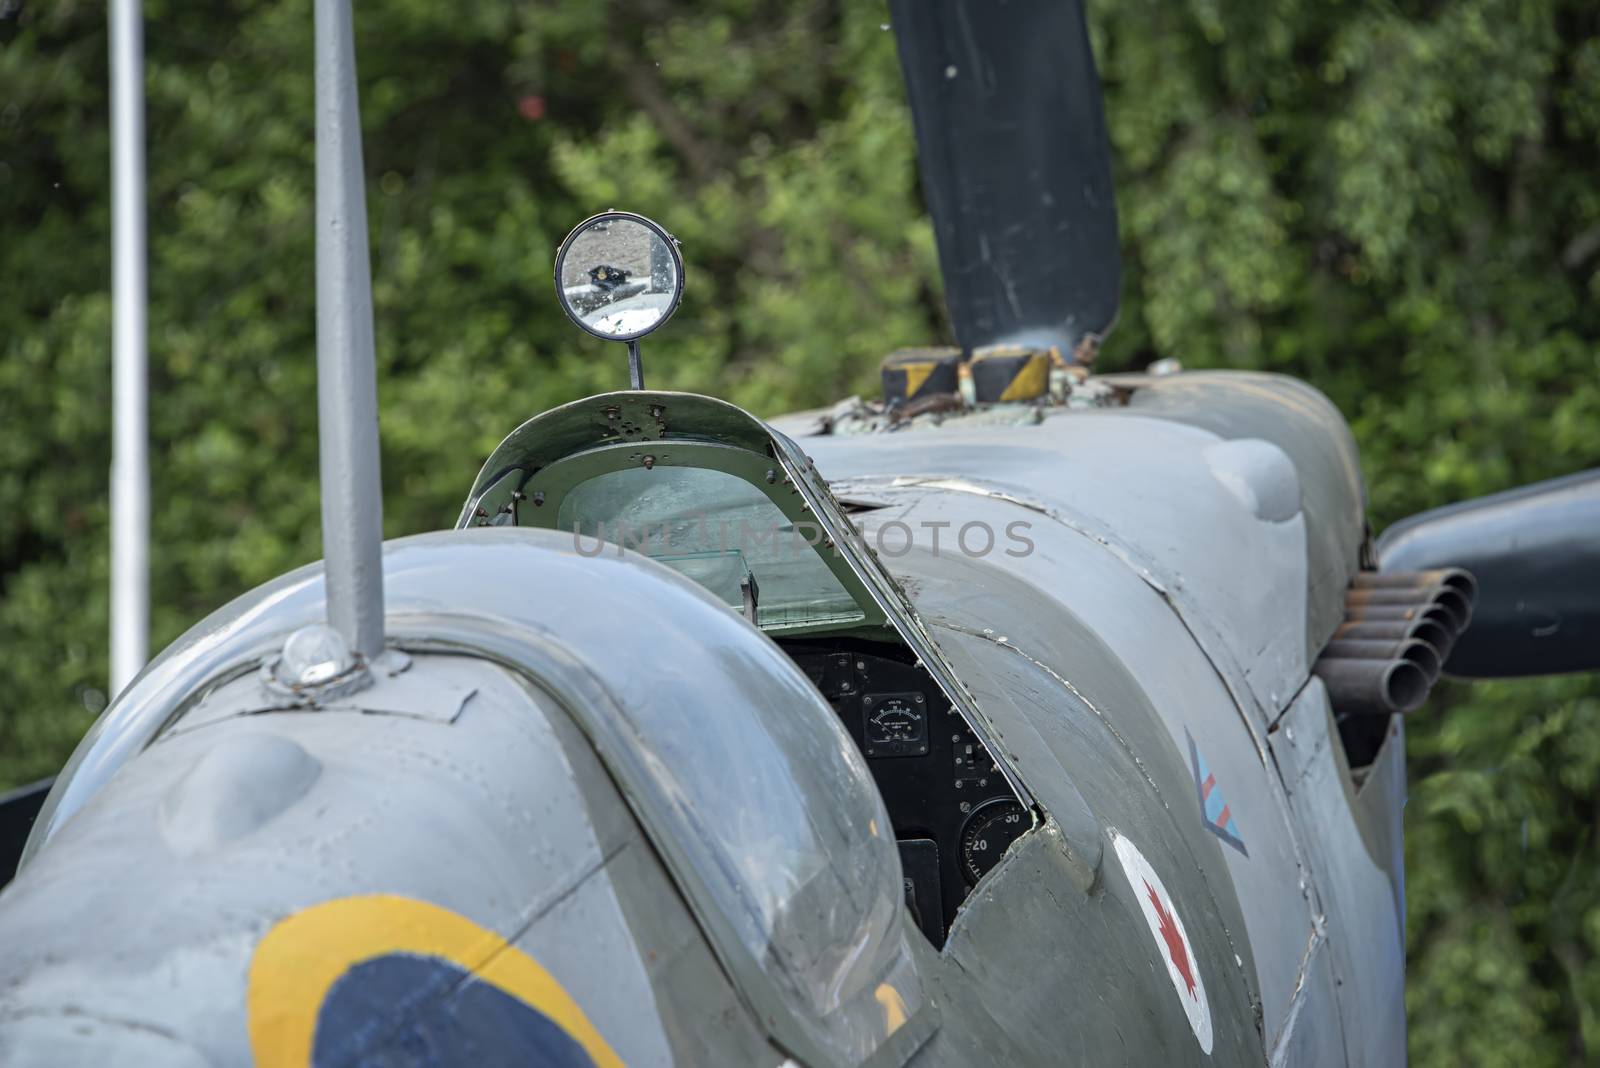 Spitfire Mk. IX, serial no. EN398, JE-J by mrs_vision